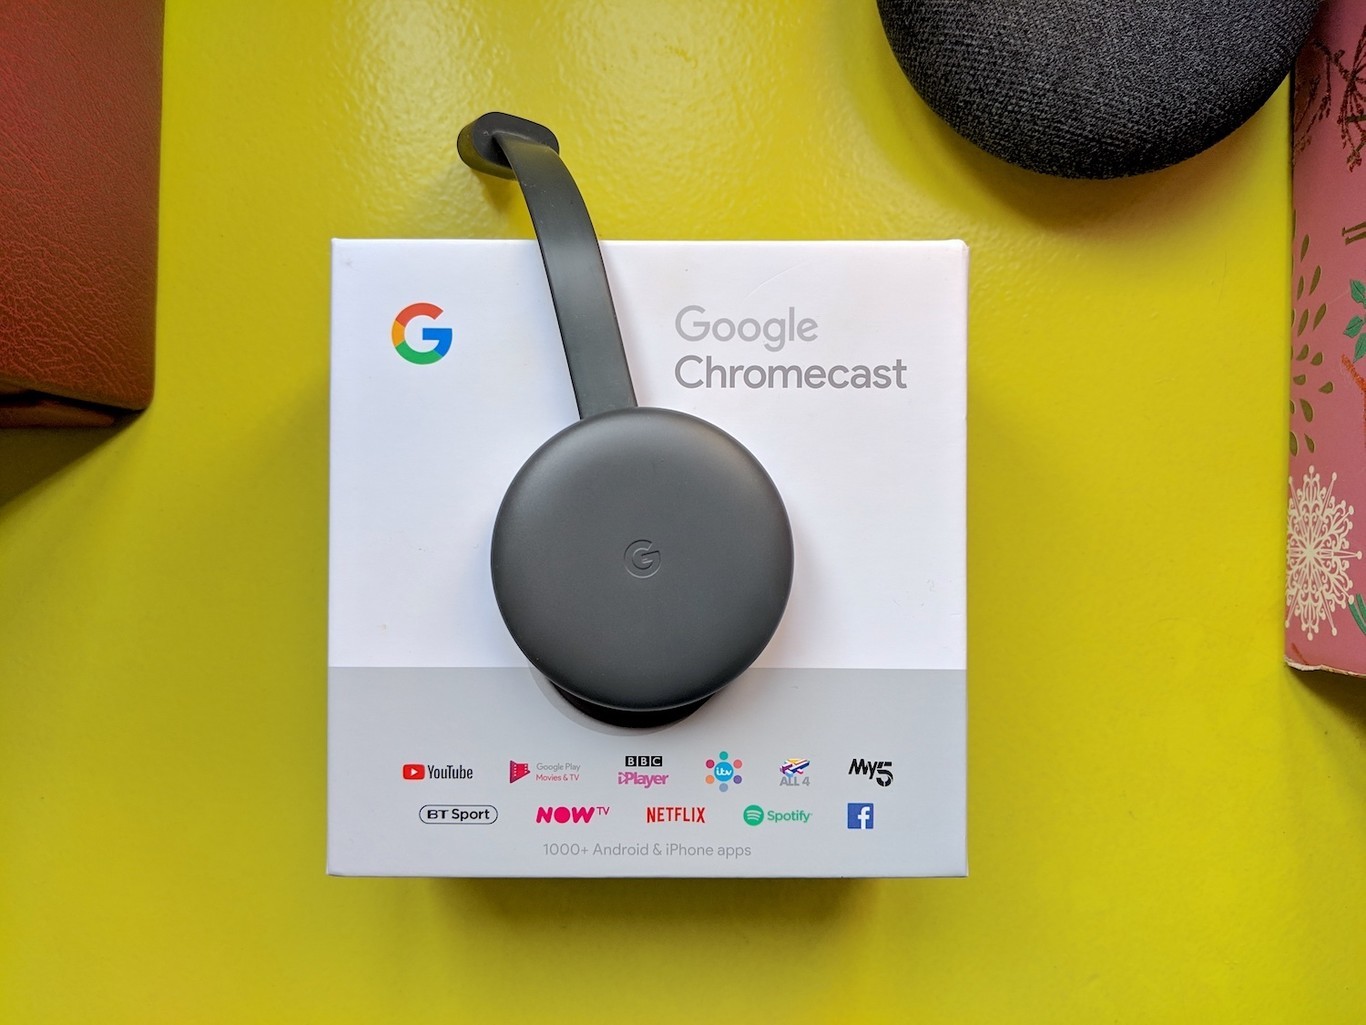 How the Chromecast works